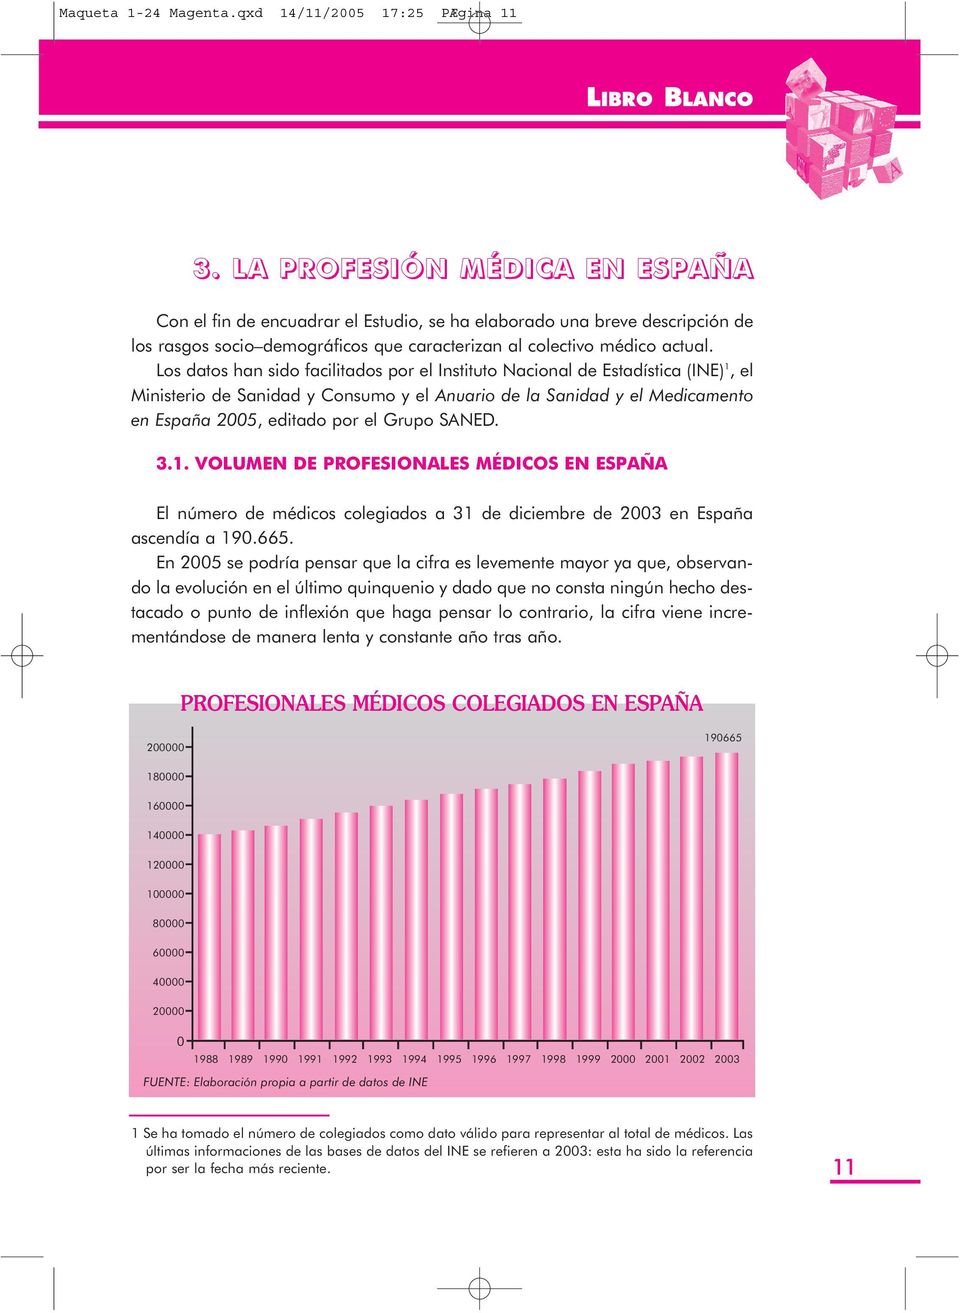 Los datos han sido facilitados por el Instituto Nacional de Estadística (INE)1, el Ministerio de Sanidad y Consumo y el Anuario de la Sanidad y el Medicamento en España 2005, editado por el Grupo